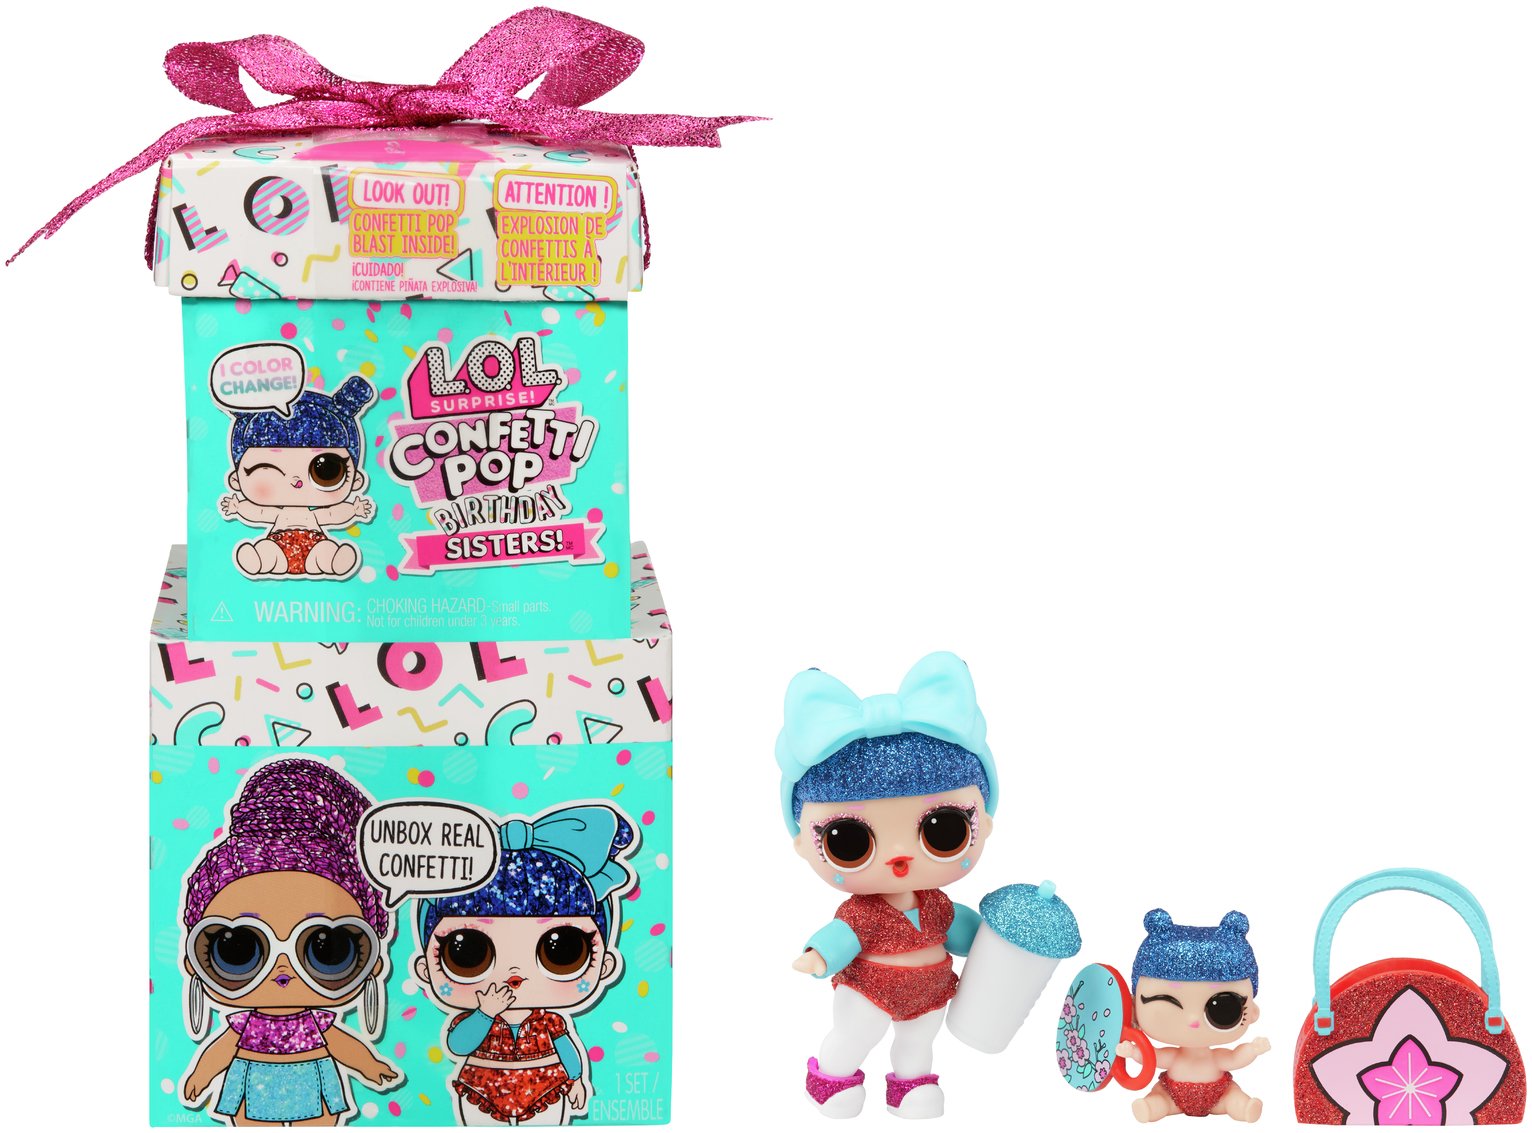 L.O.L. Surprise Confetti Pop Birthday Sister Doll